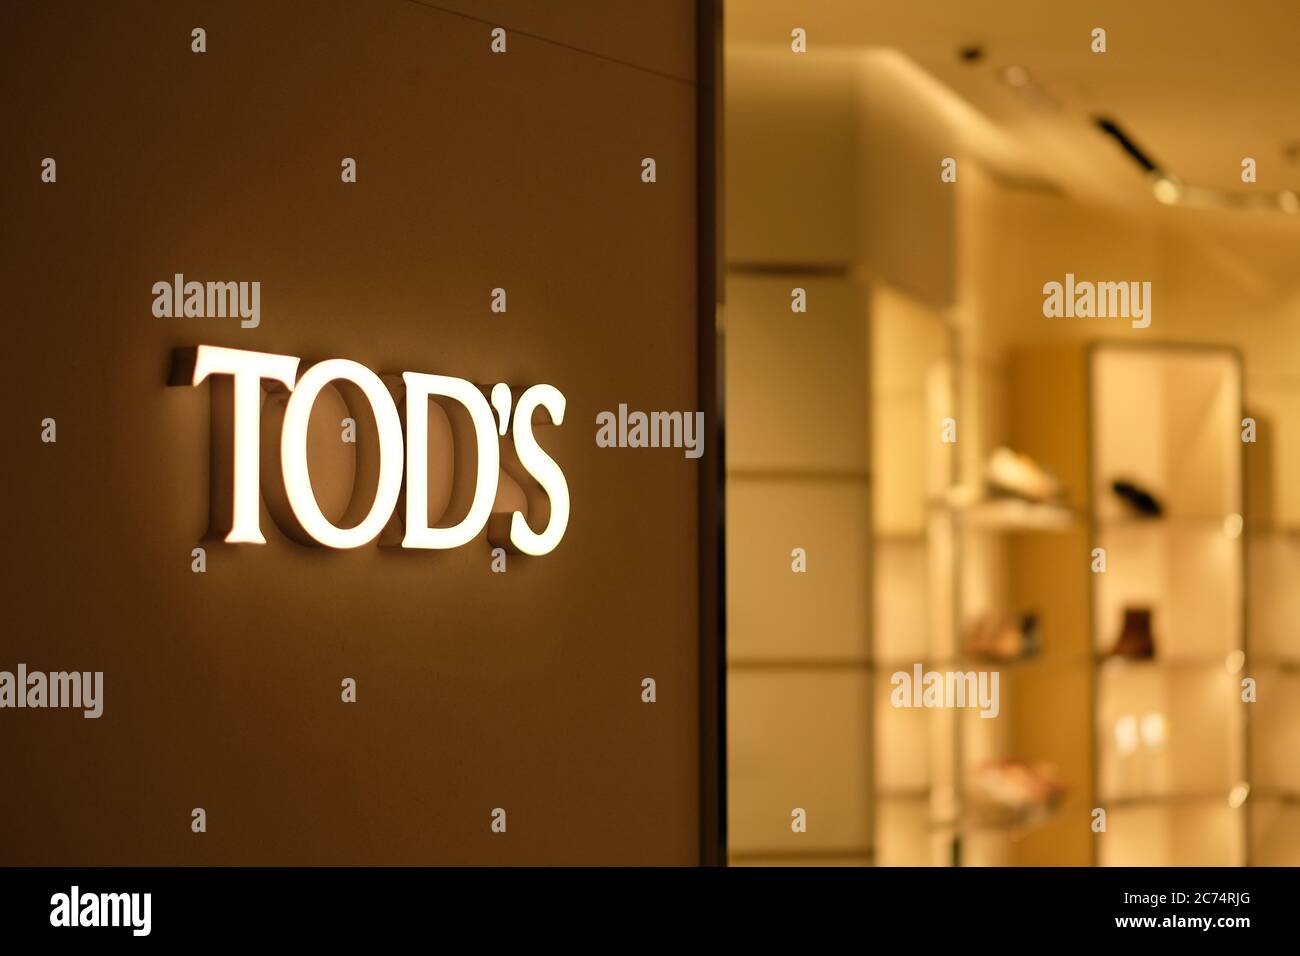 Tods logo immagini e fotografie stock ad alta risoluzione - Alamy